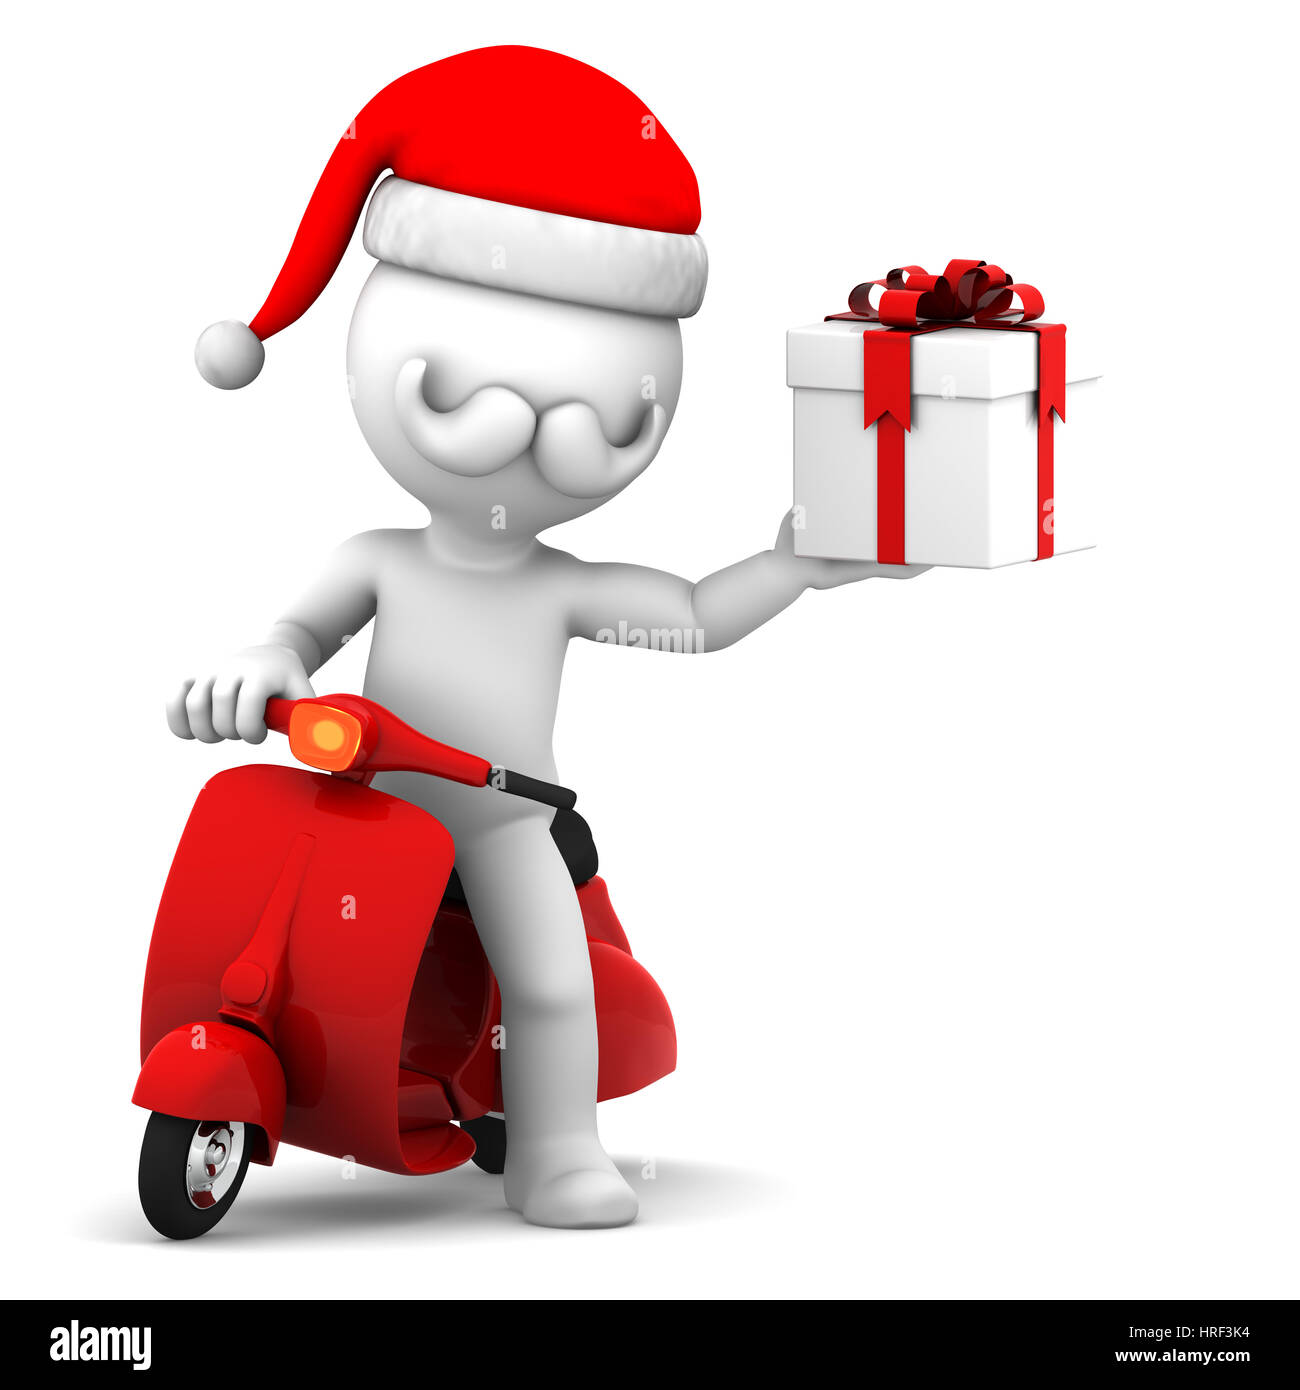 Babbo Natale 1932.Babbo Natale Di Consegnare I Regali Di Natale Su Uno Scooter Foto Stock Alamy